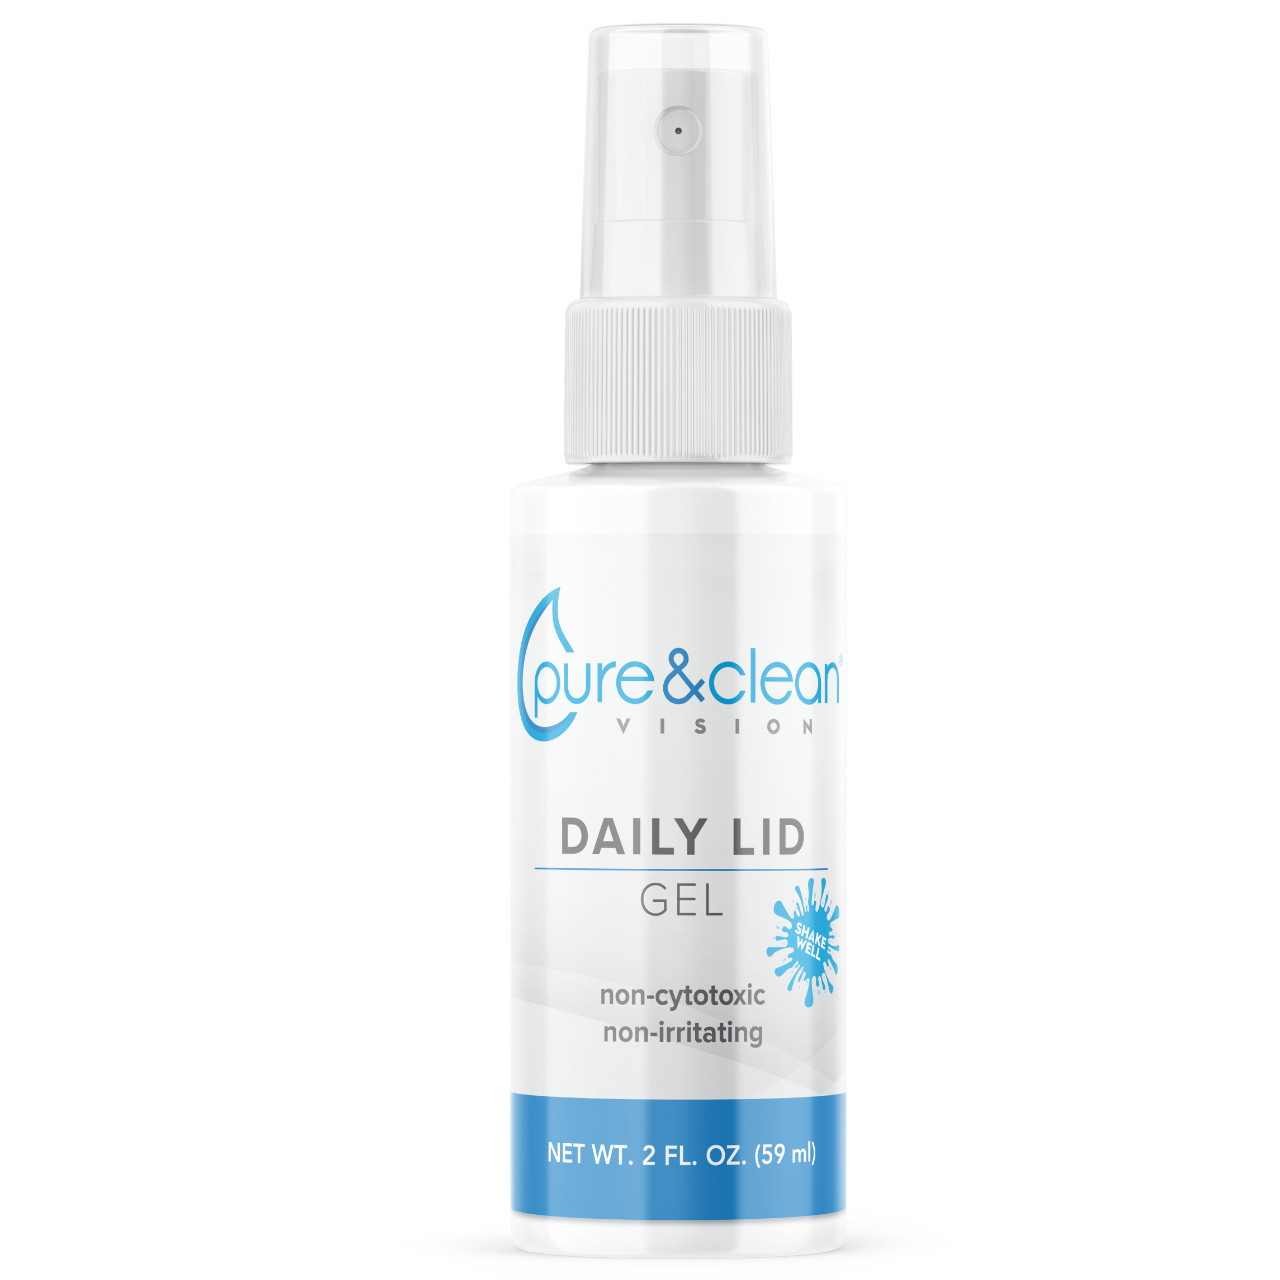 Daily Lid Gel | 2 ounce Hydrogel Spray | 24 ct box